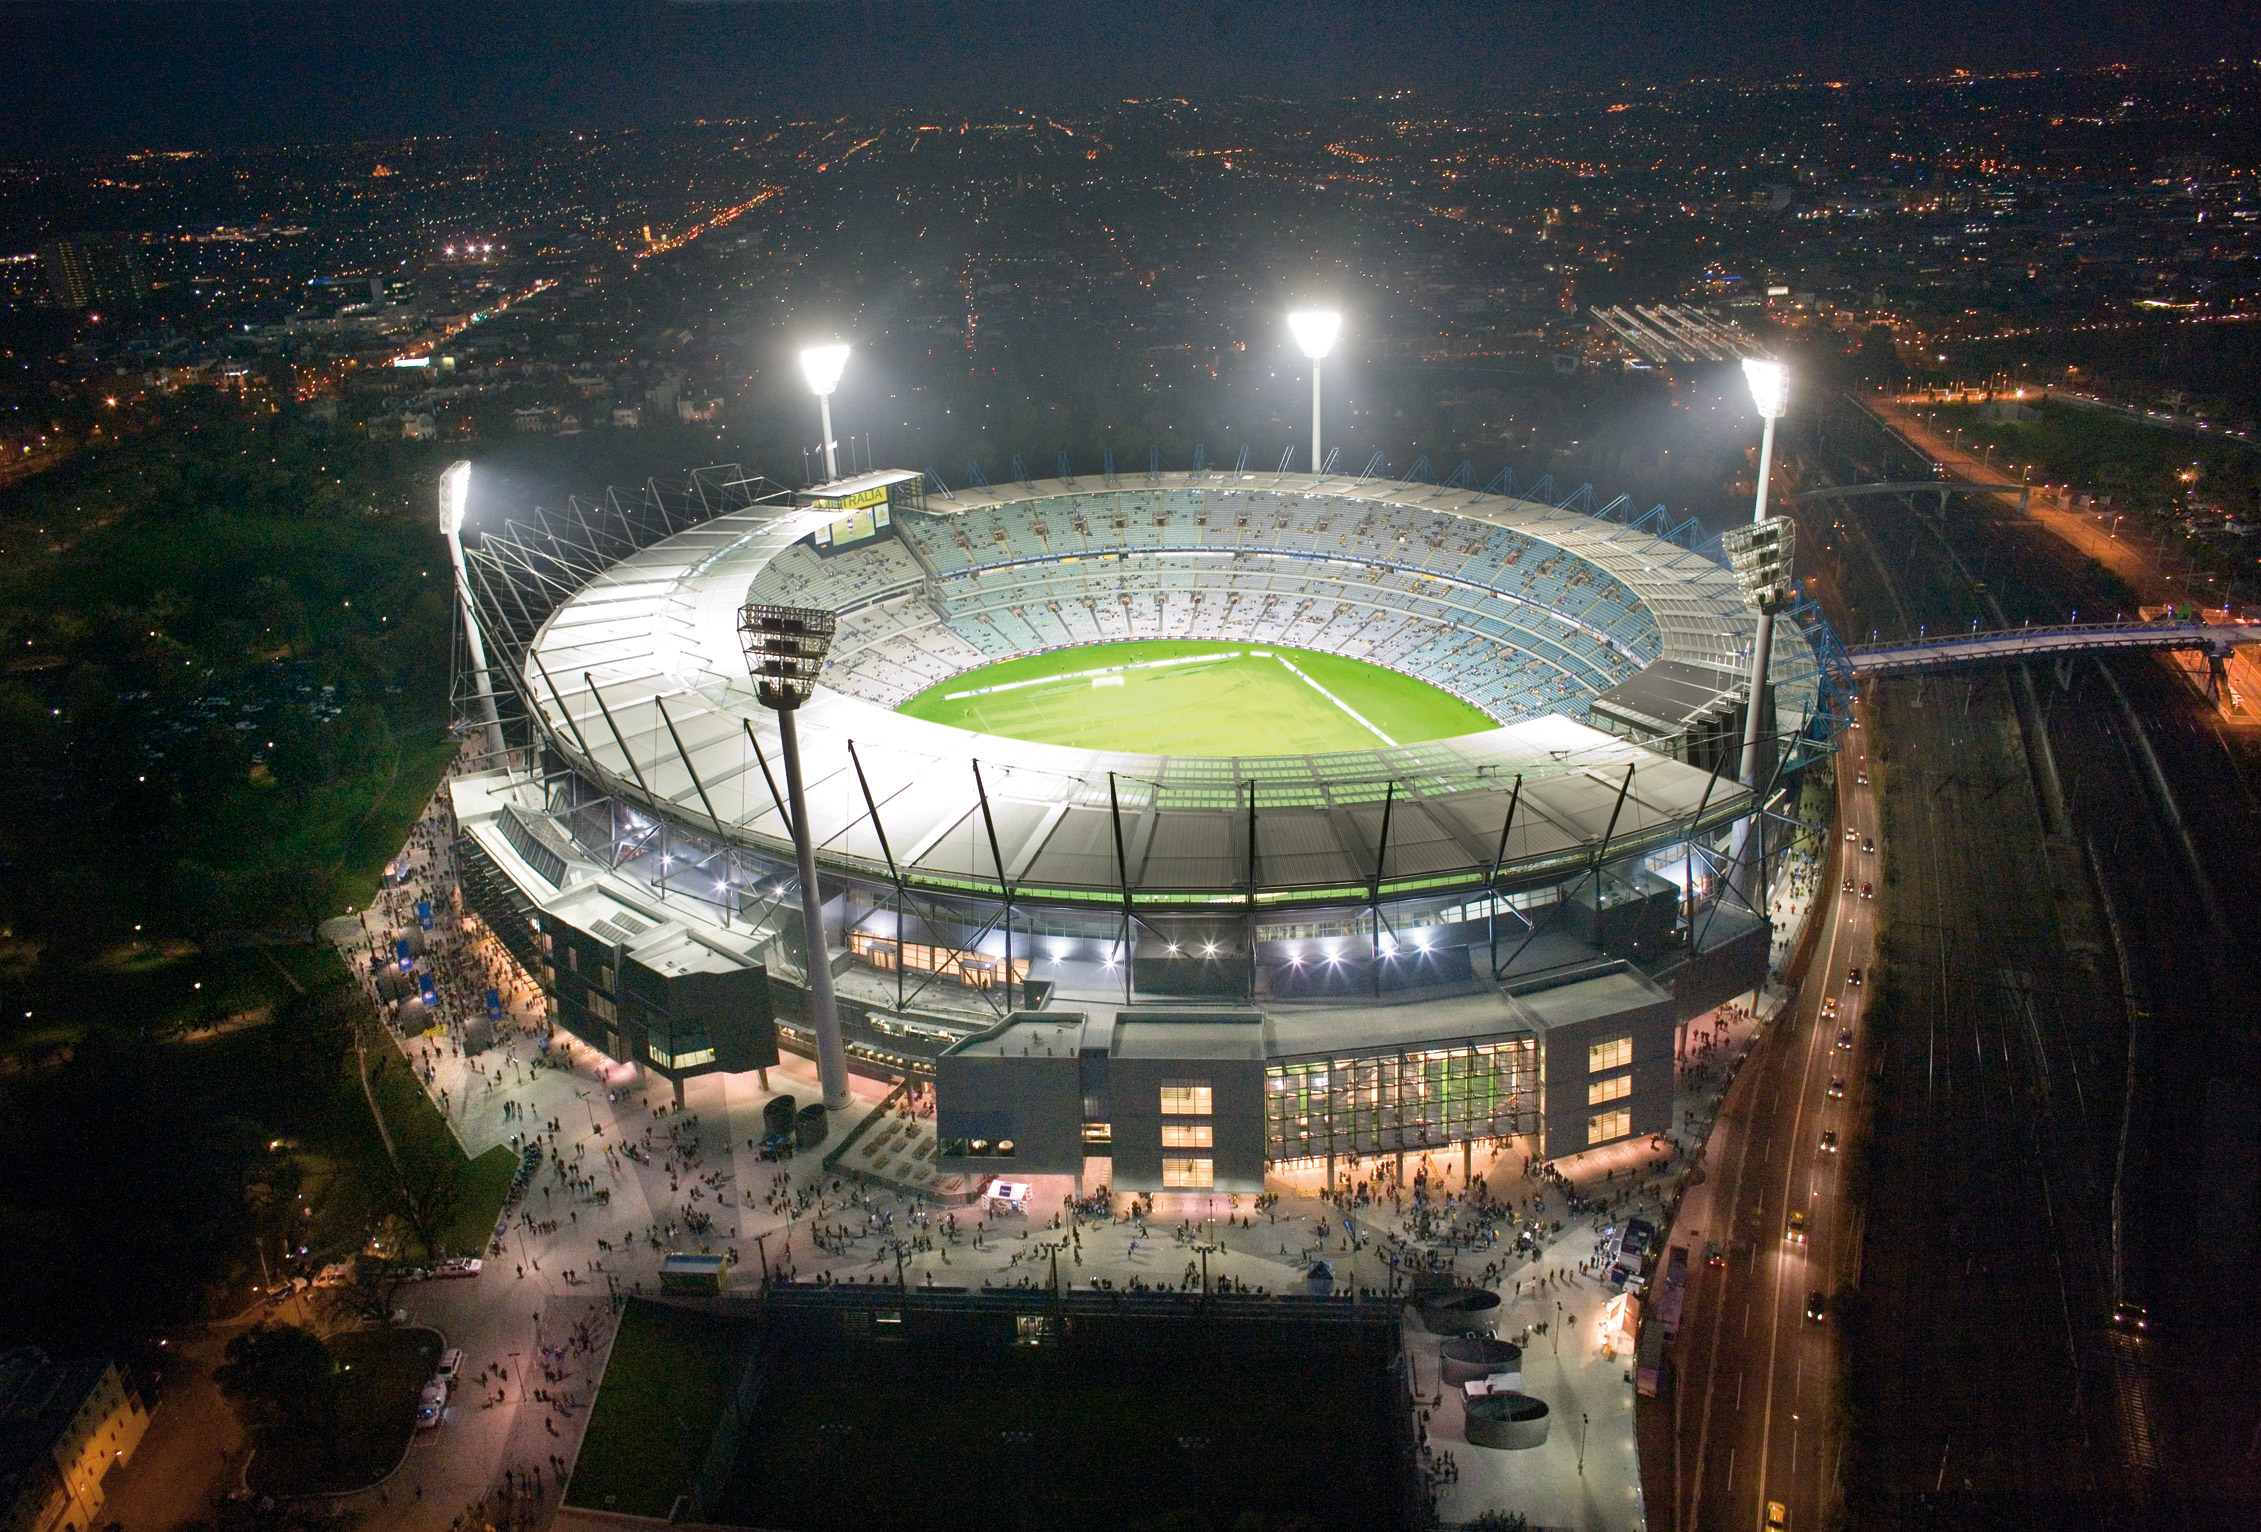 Melbourne Cricket Ground – Northern Stand